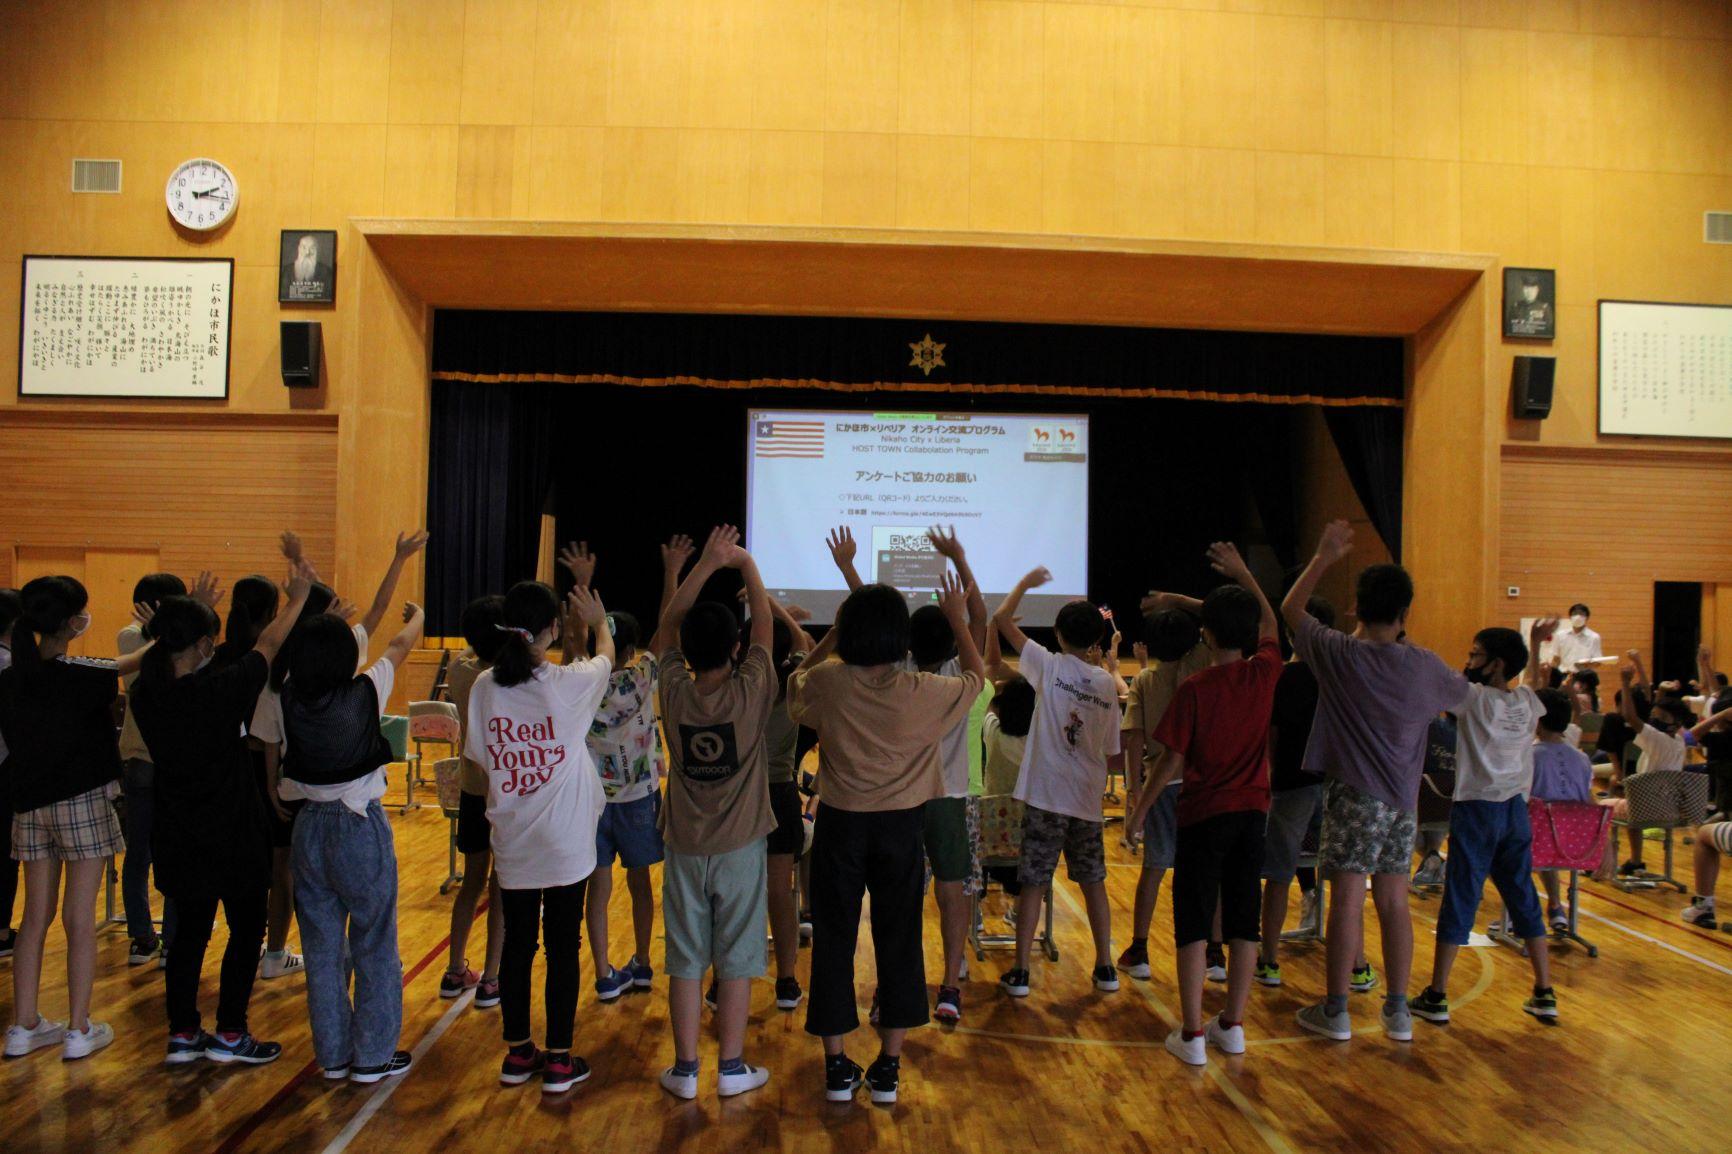 オンライン交流会に参加した金浦小学校の体育館にて、舞台のスクリーンに映し出された映像に手を振る児童たちの写真